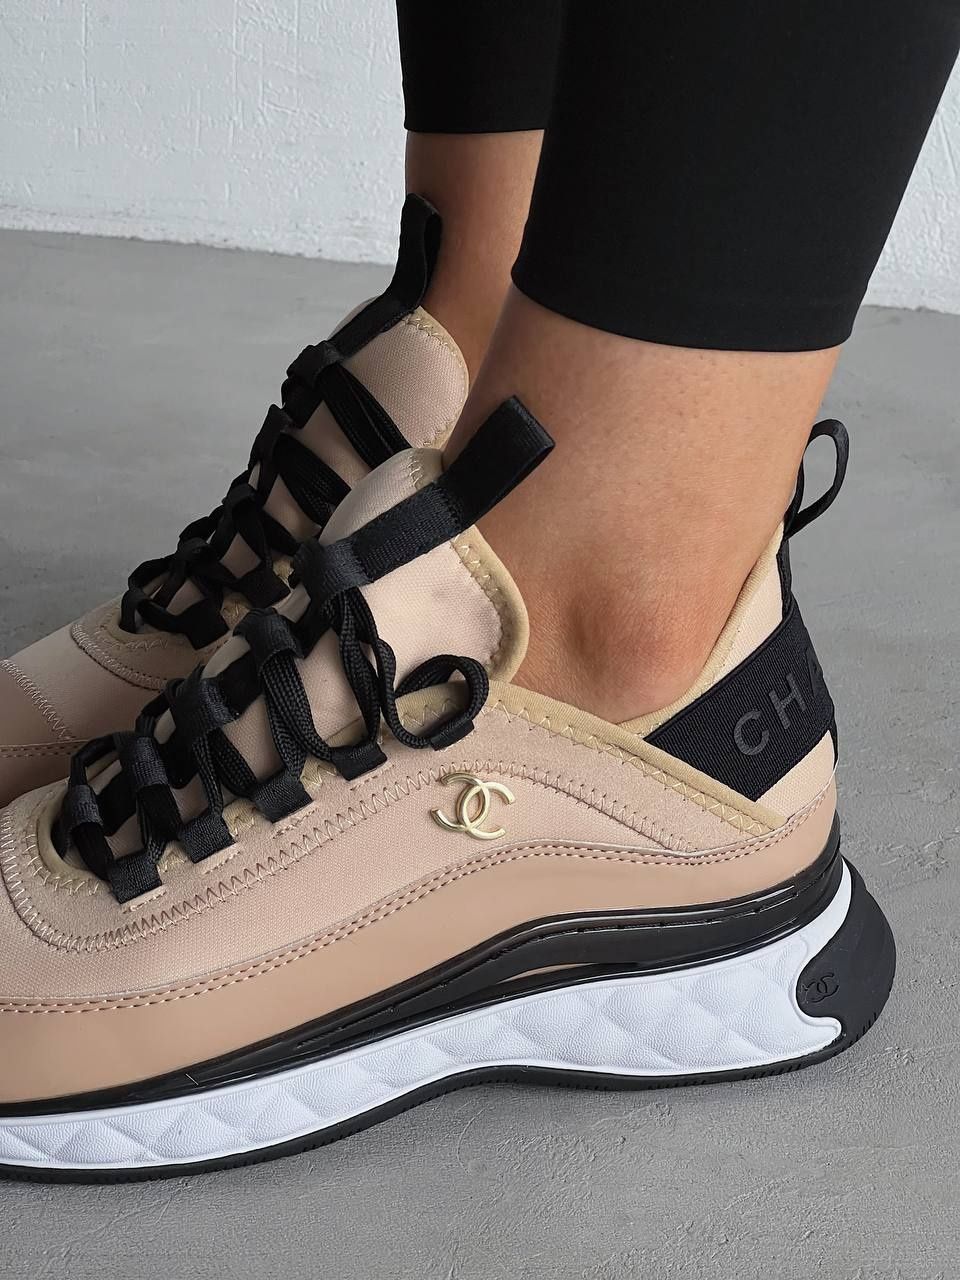 Жіночі кросівки Chanel Sneakers Beige, та інші кольори р36-40